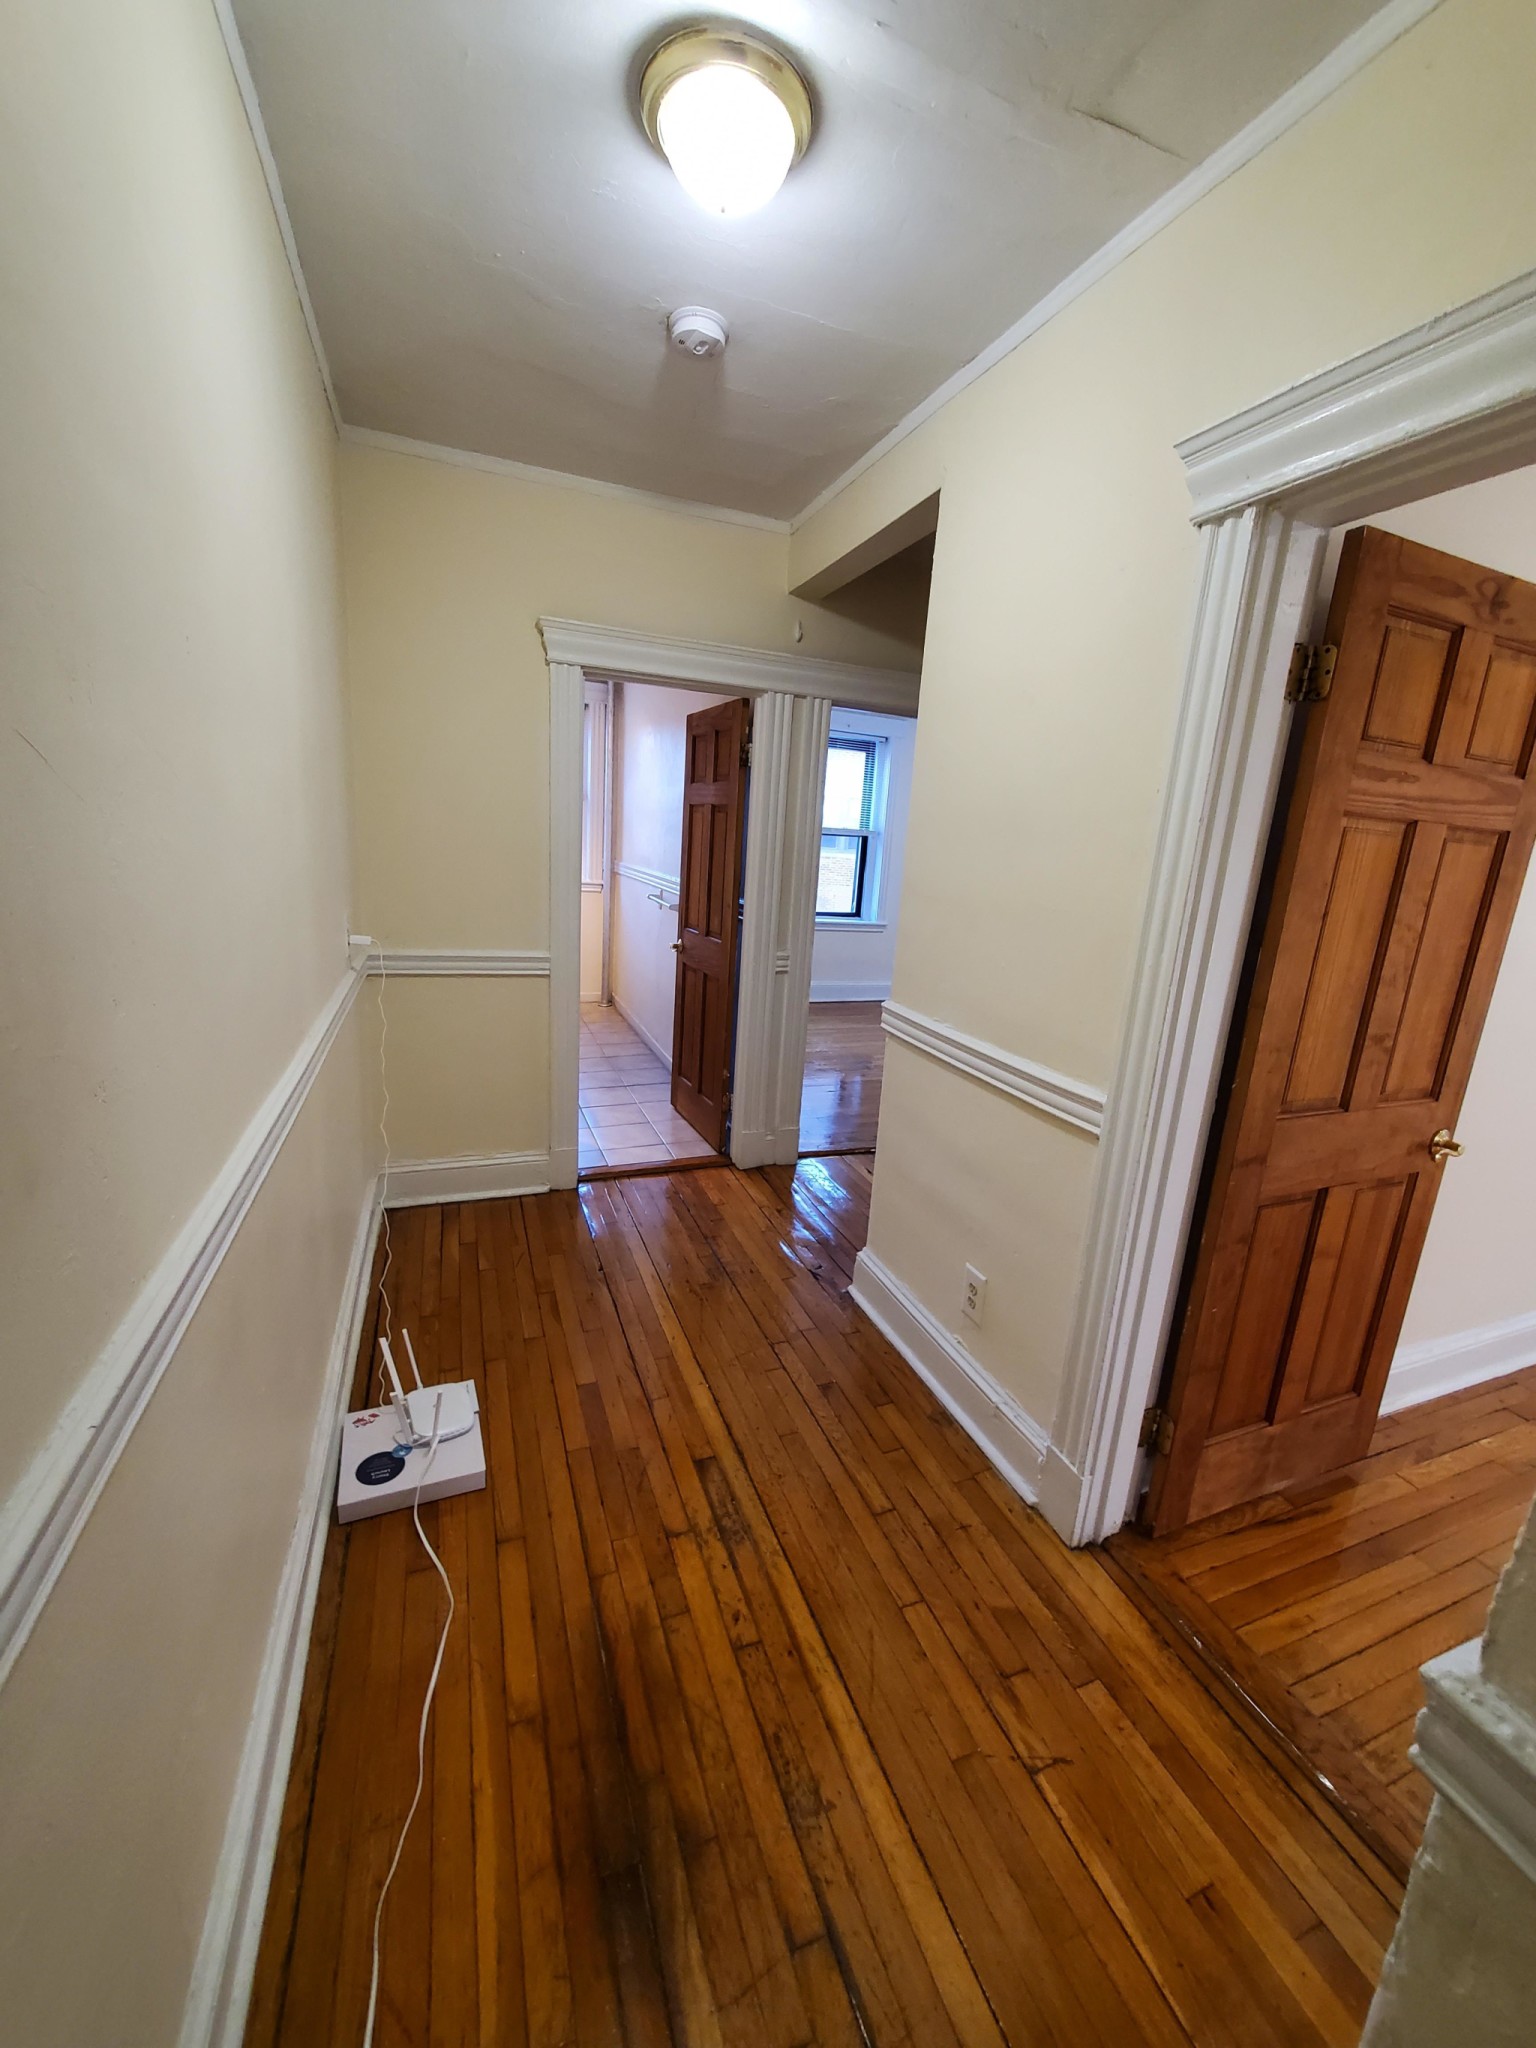 Photos of apartment on Beacon,Boston MA 02115